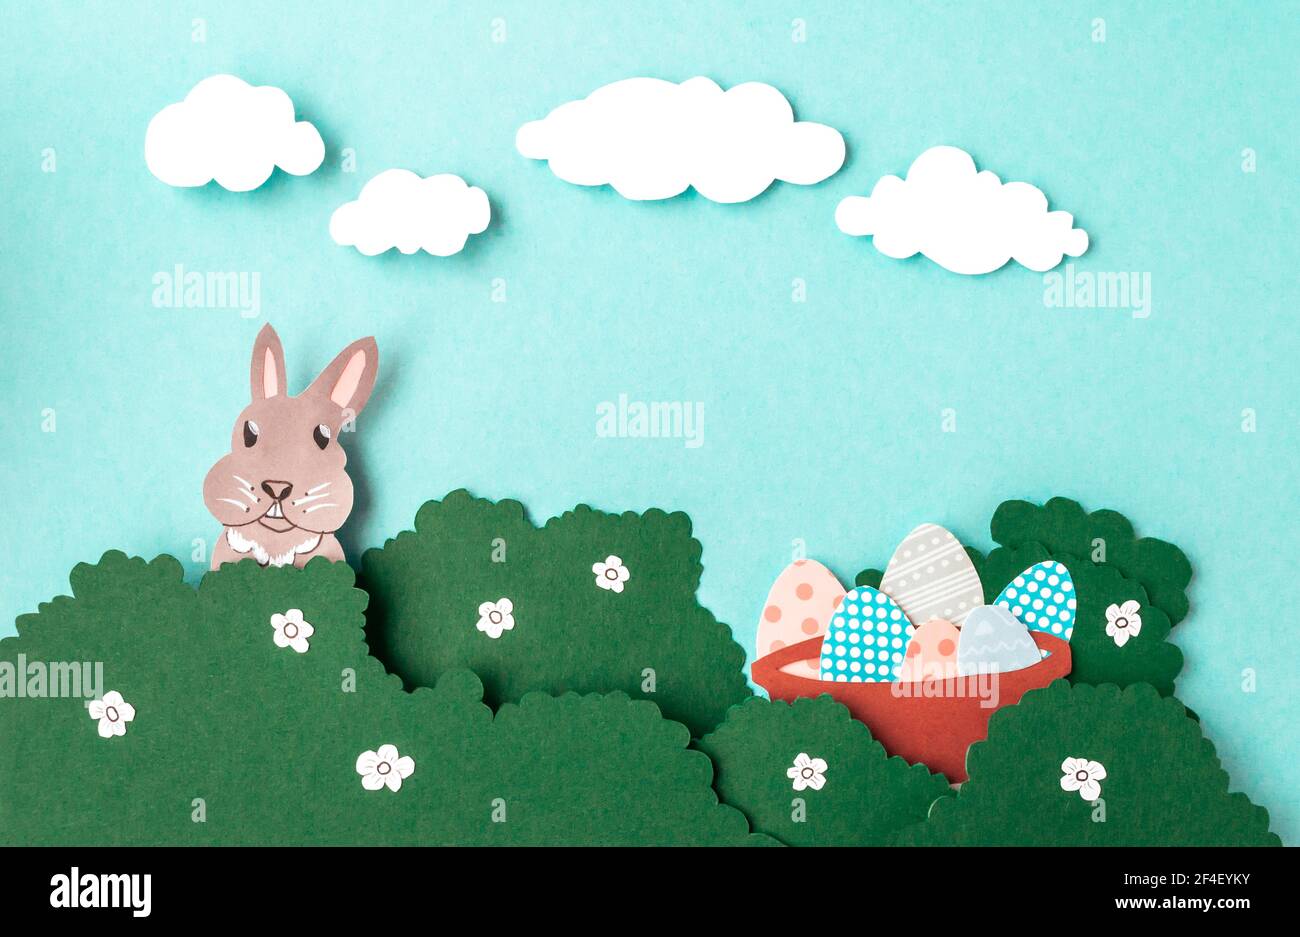 Bricolage facile de Pâques : le lapin en papier avec un gobelet